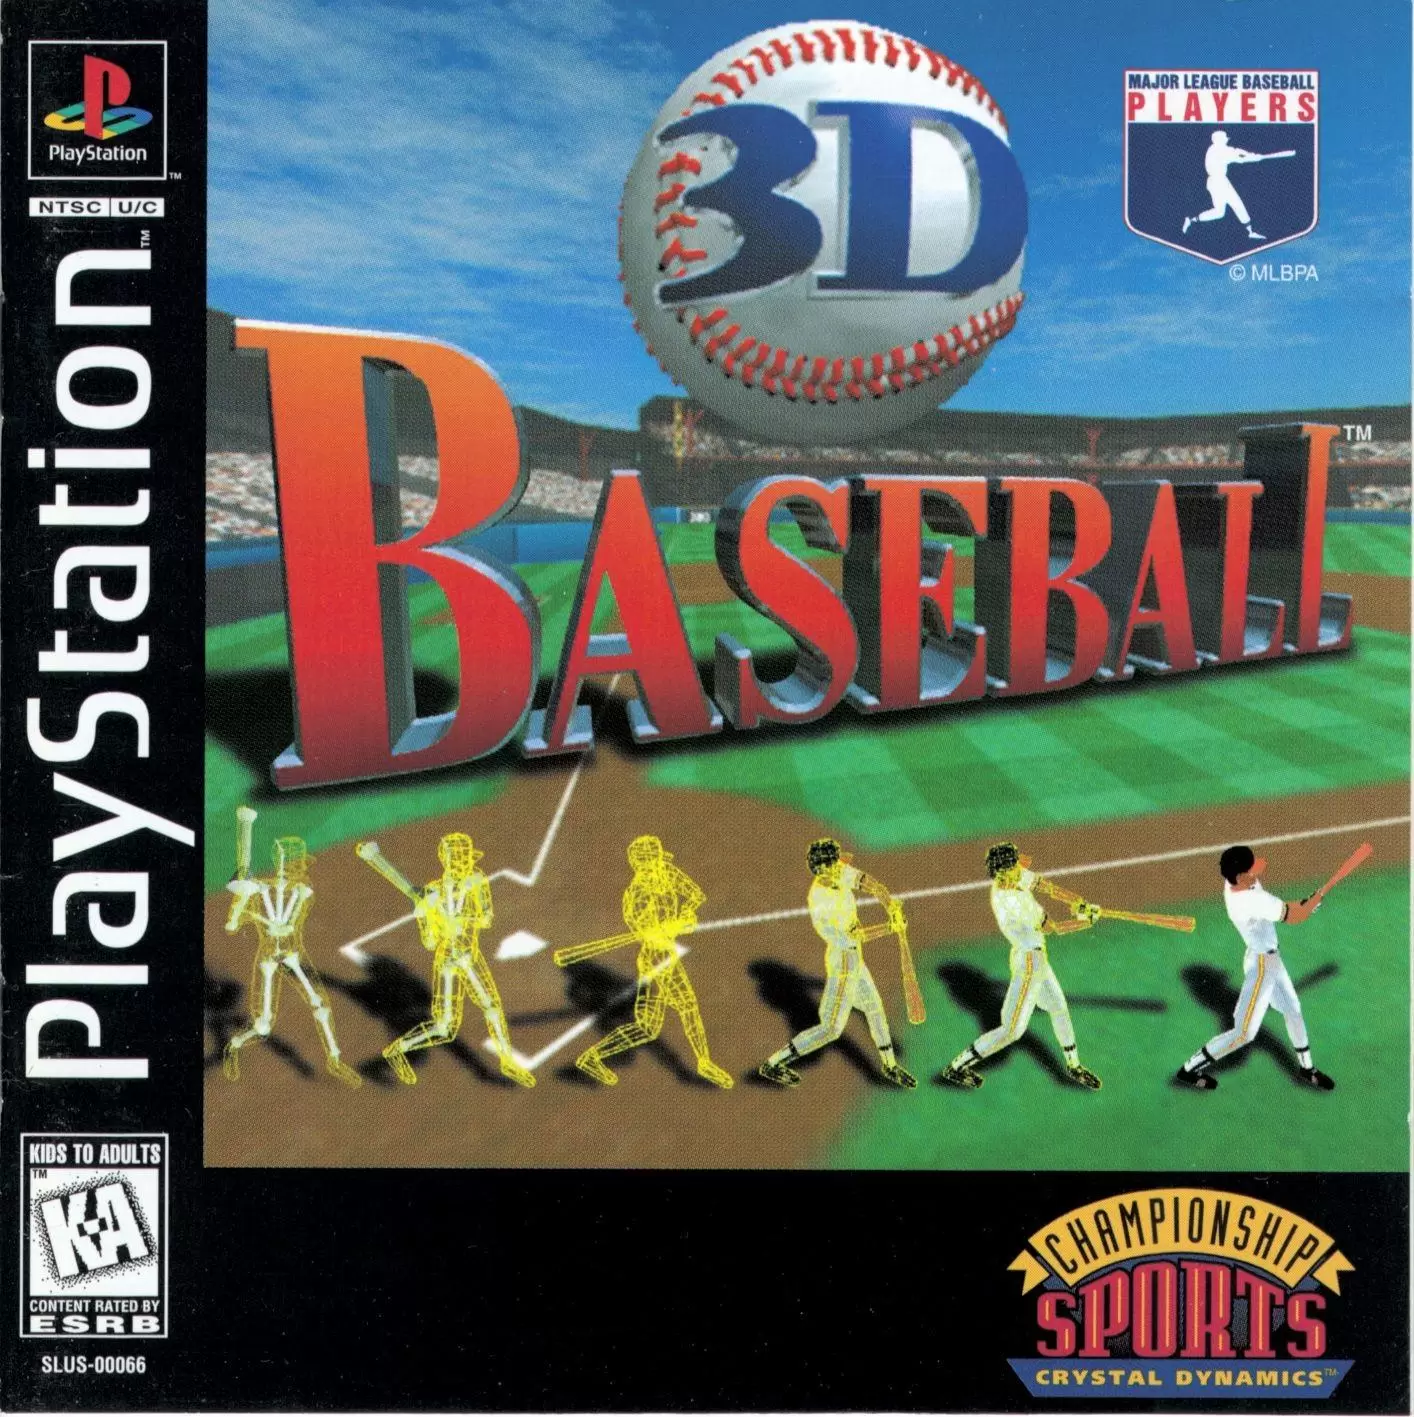 Playstation games - 3D Baseball